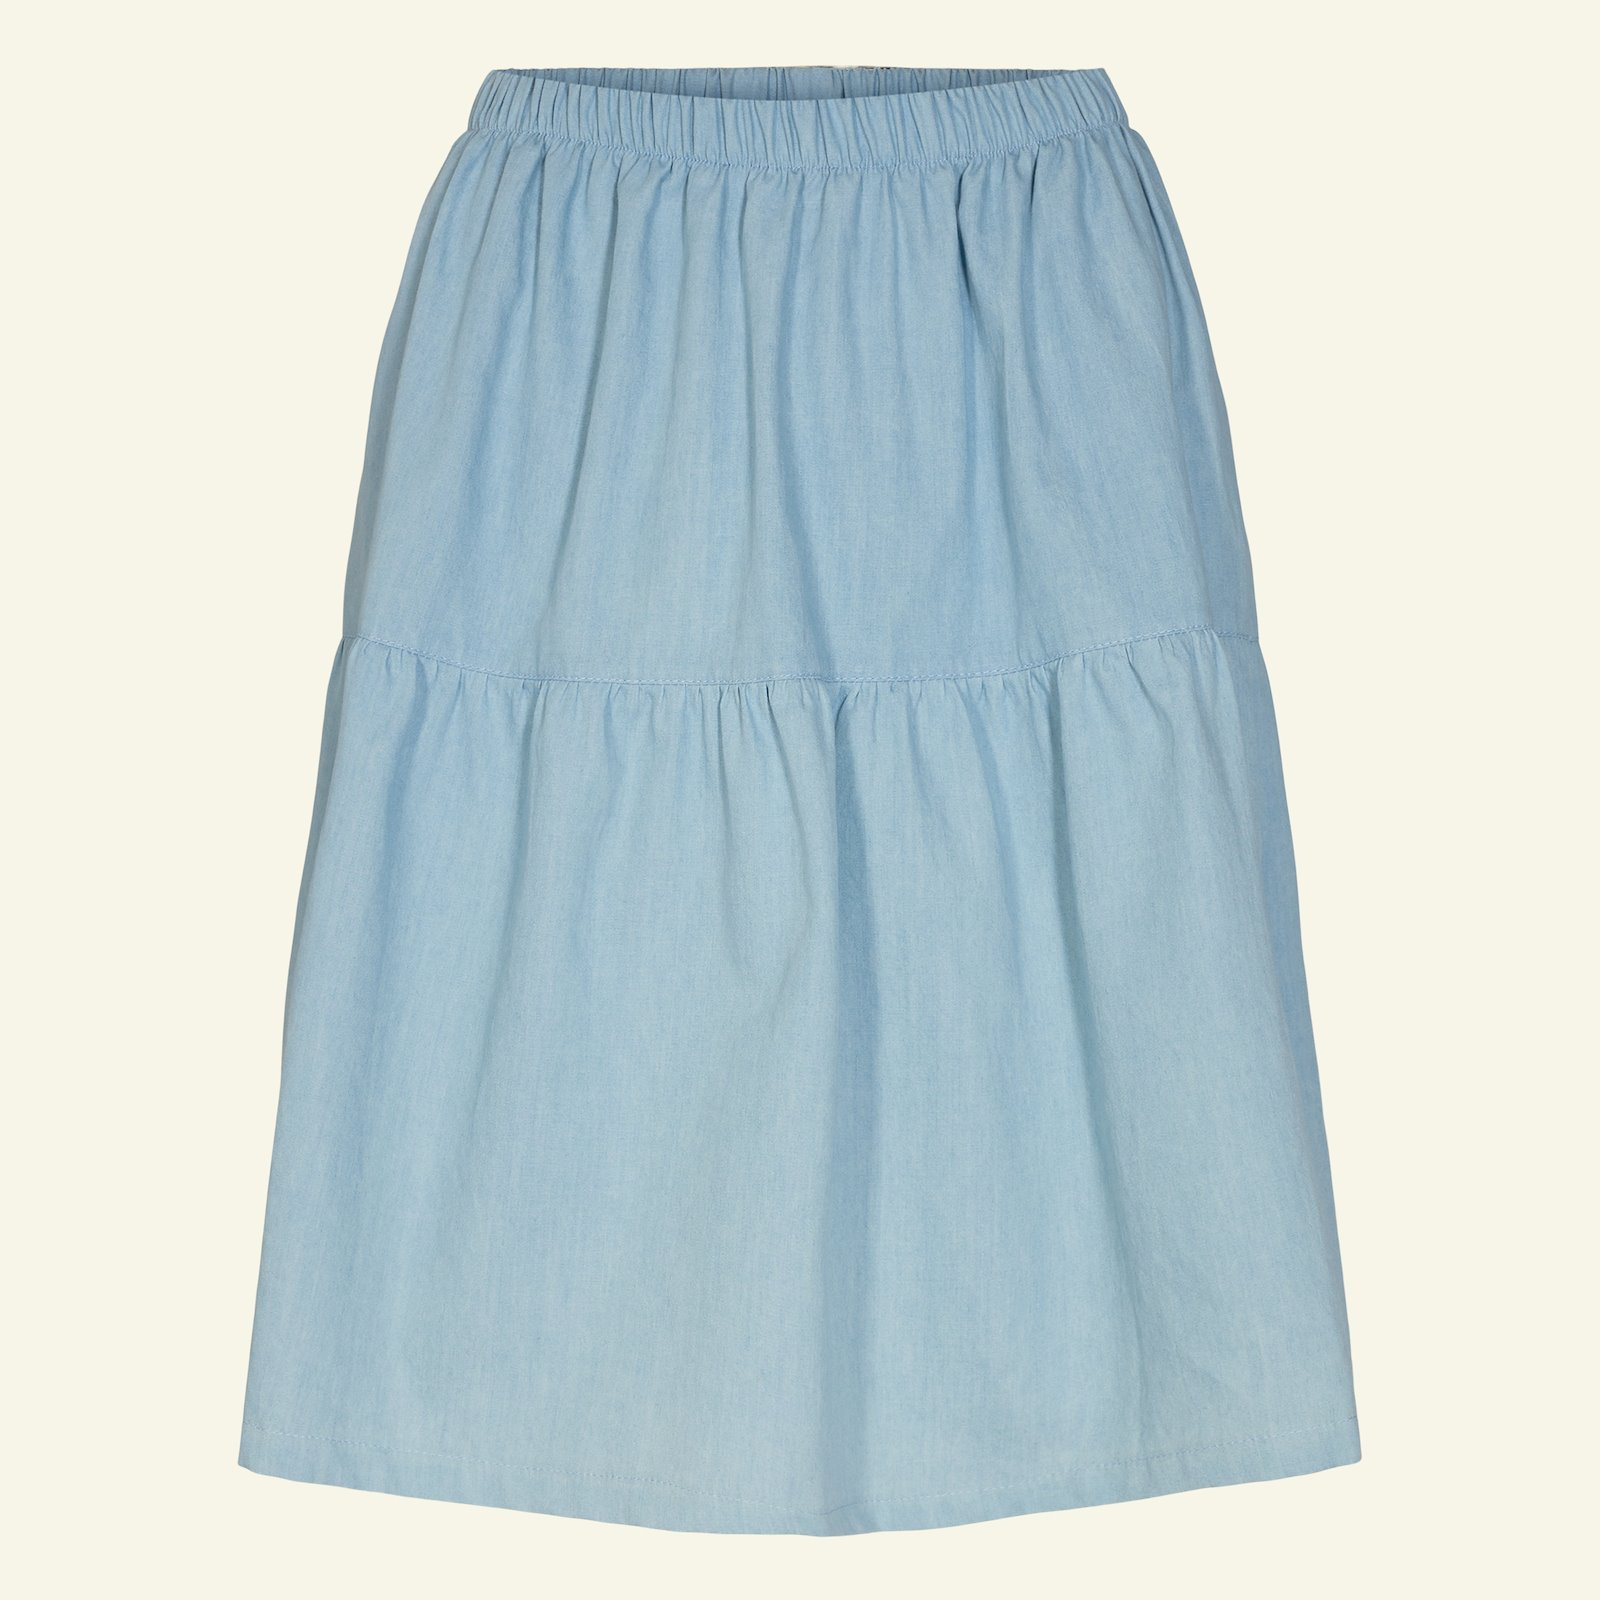 Split level skirt, S p21046_400312_sskit